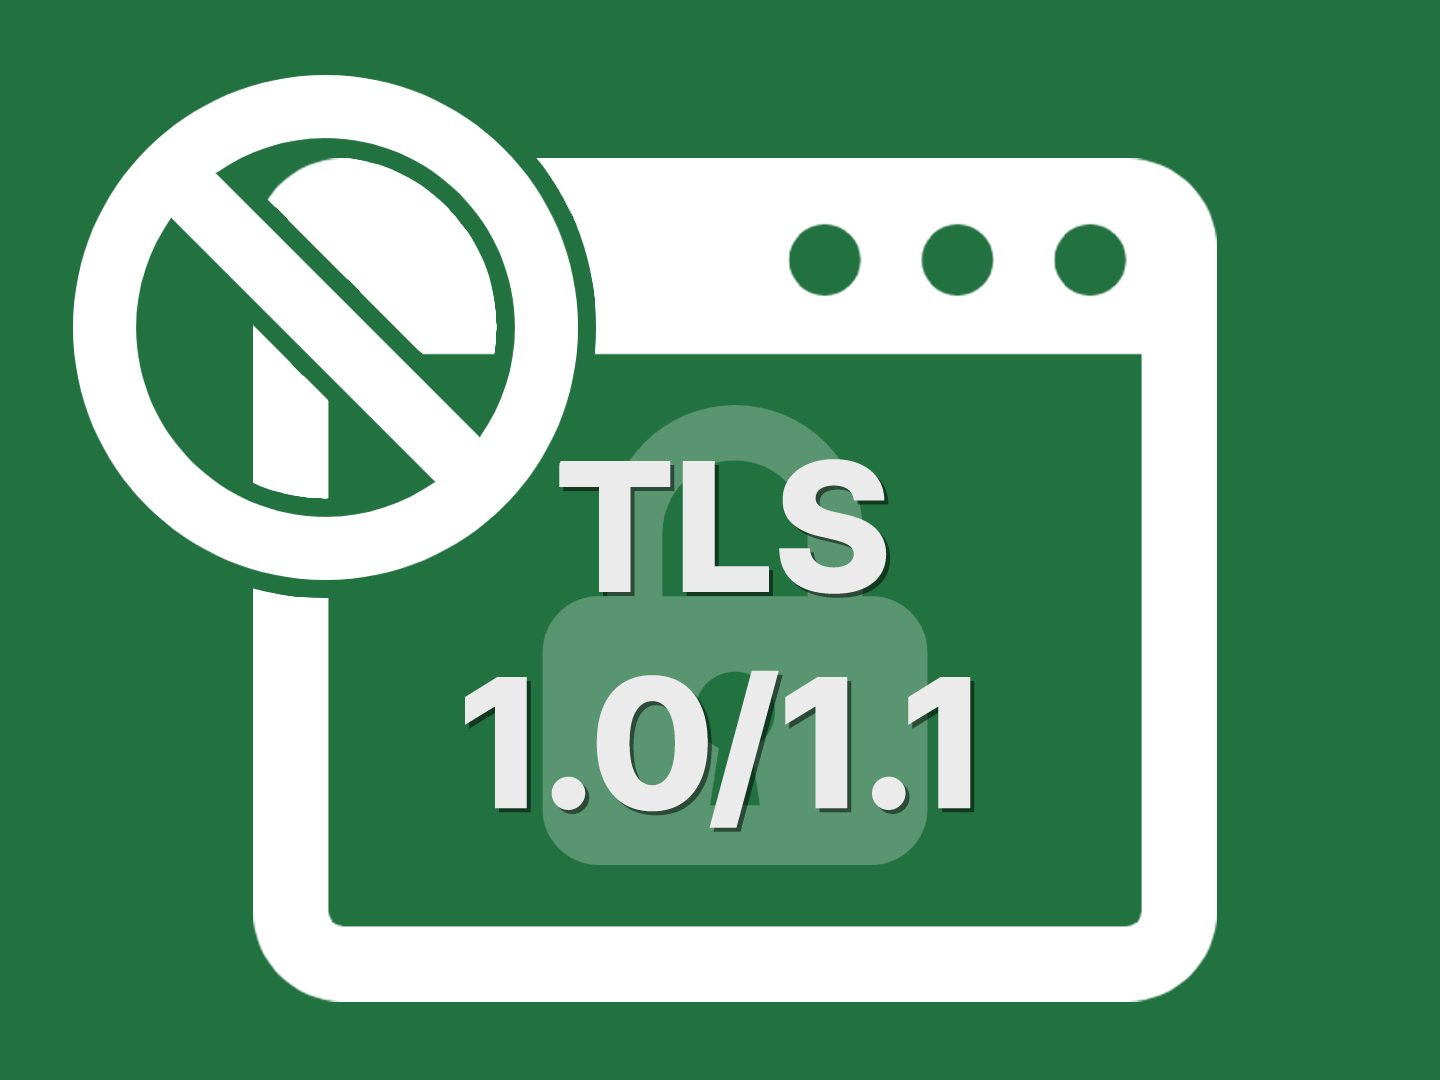 TLS1.0/1.1